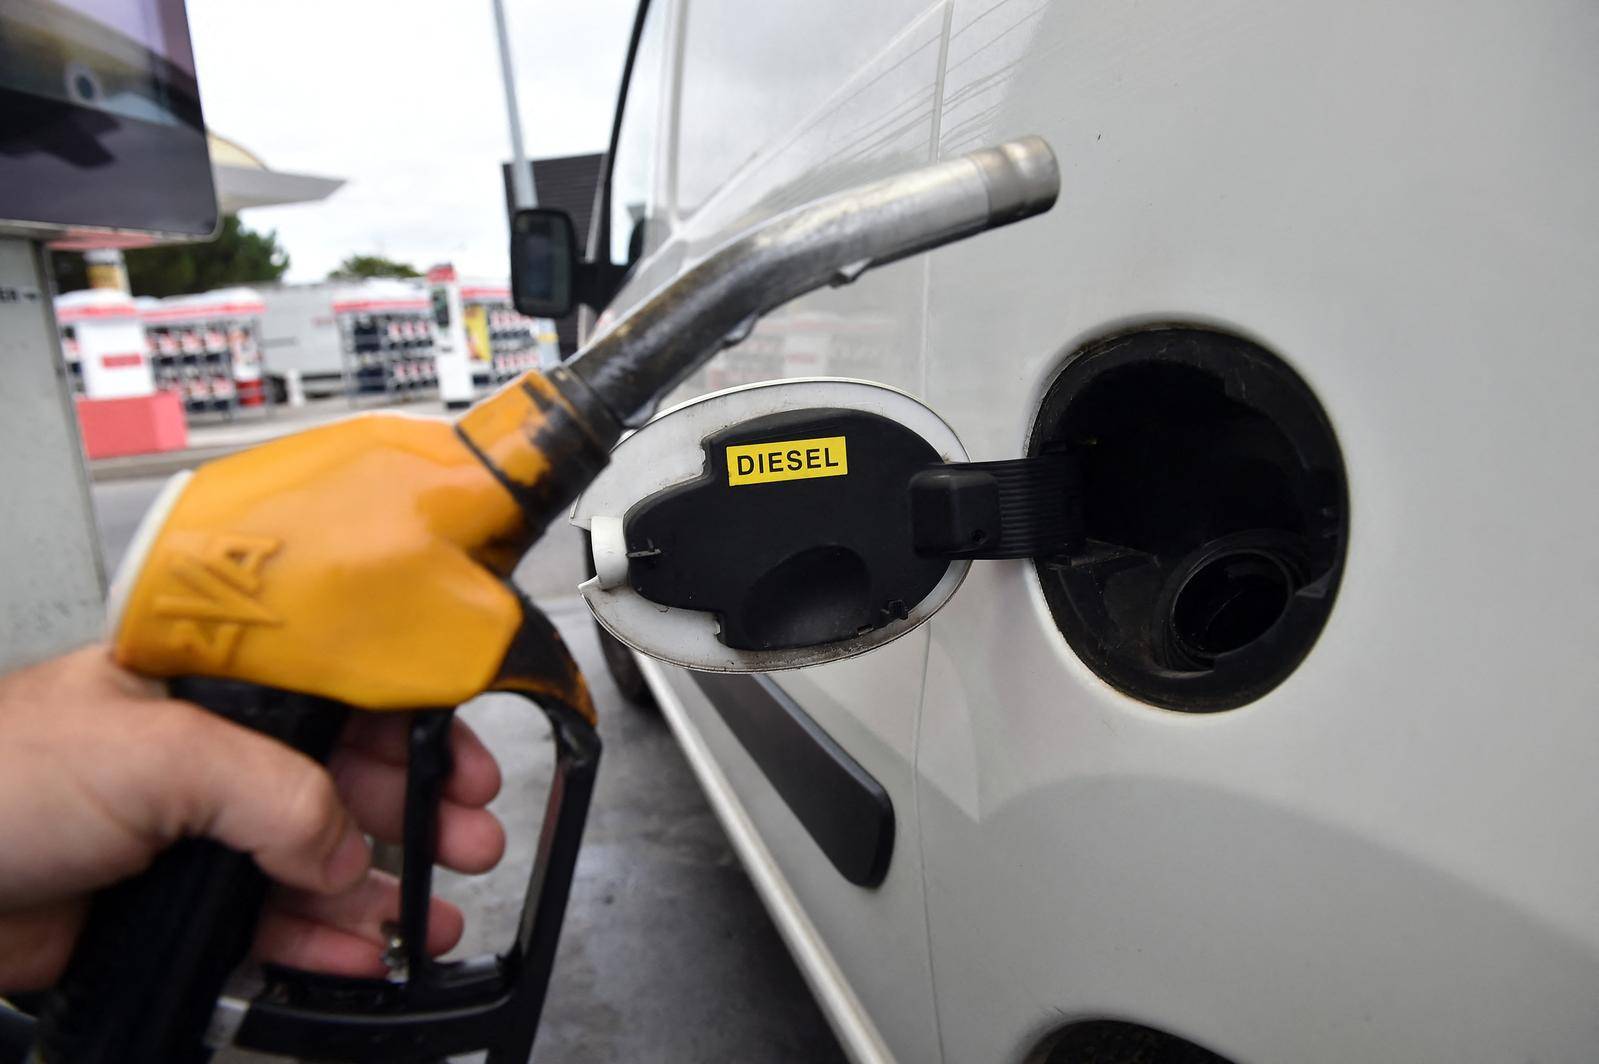 L'Union européenne a validé lundi la fin des moteurs à essence et diesel dans les voitures neuves à partir de 2035 ( AFP / REMY GABALDA )